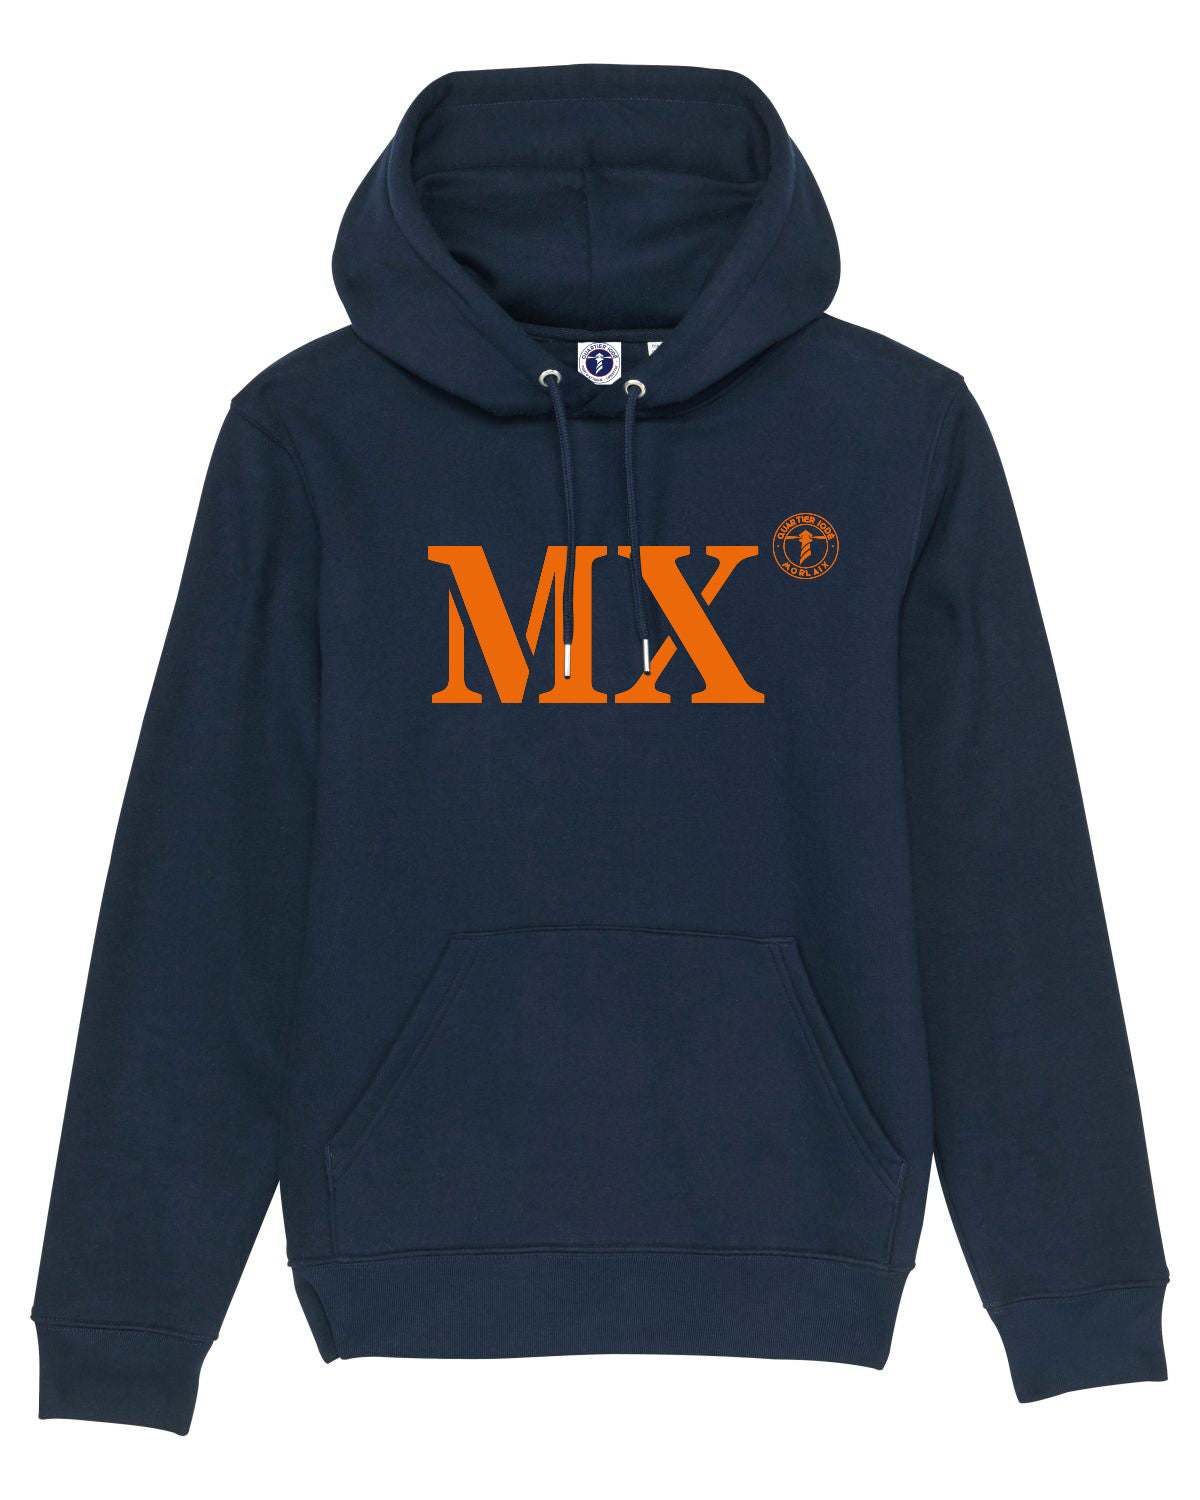 Porter fierement votre sweat à capuche MX pour Morlaix de la marque Quartier iodé pour hommes et femmes.